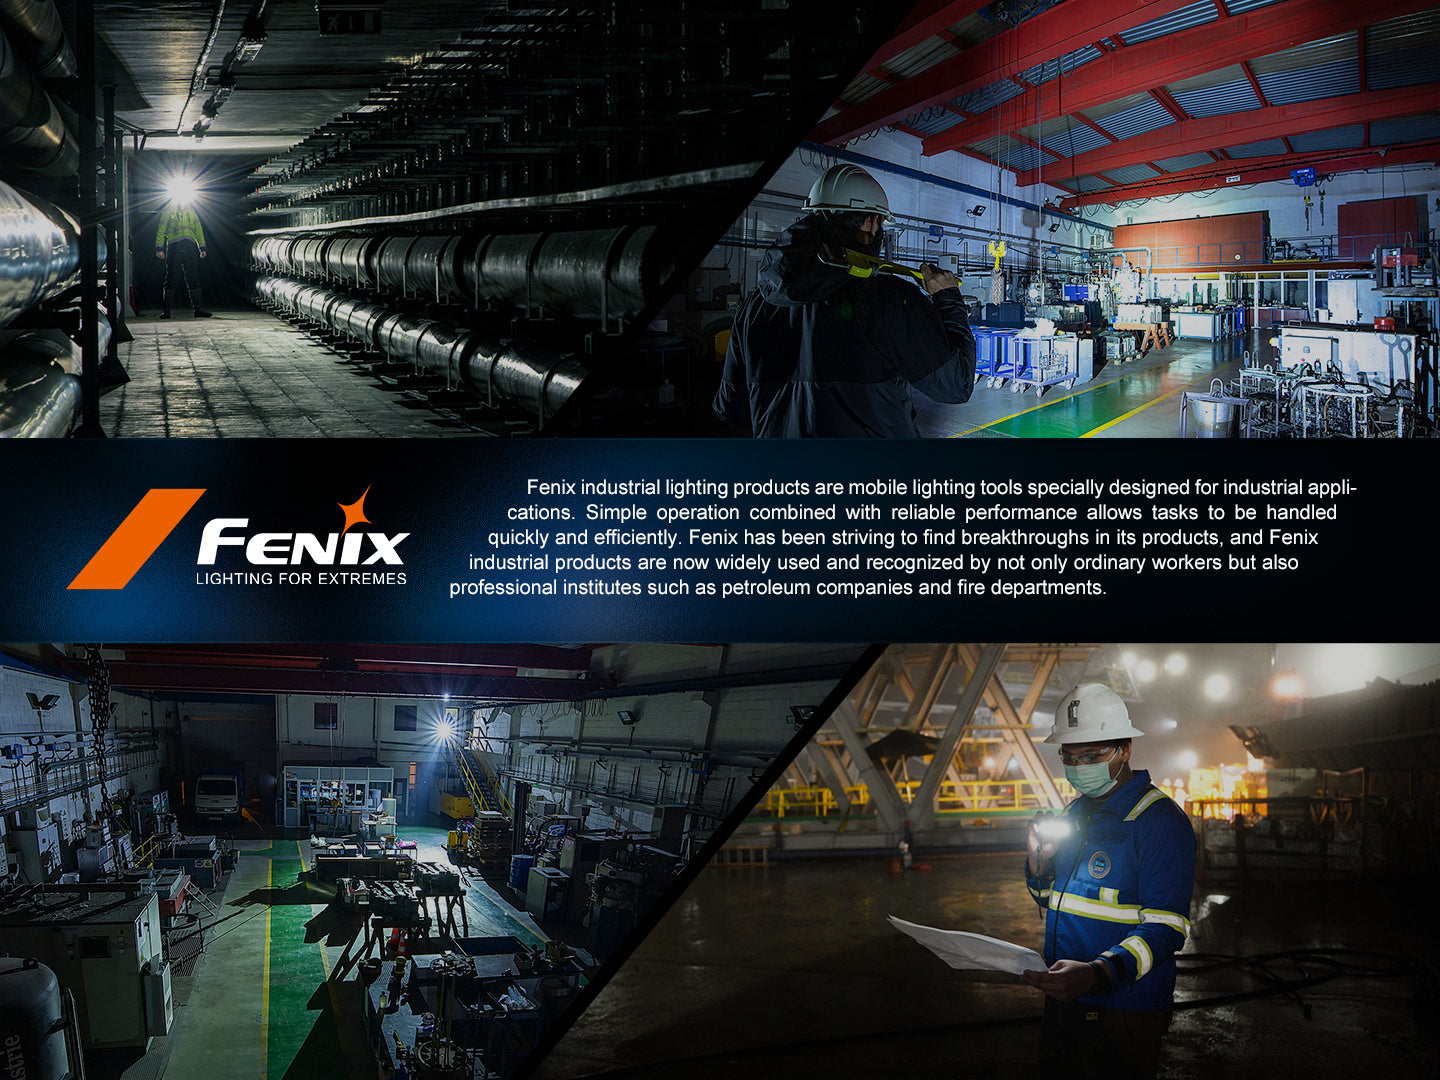 Fenix HM71R LED Rechargeable Headlamp (2700 Lumens)